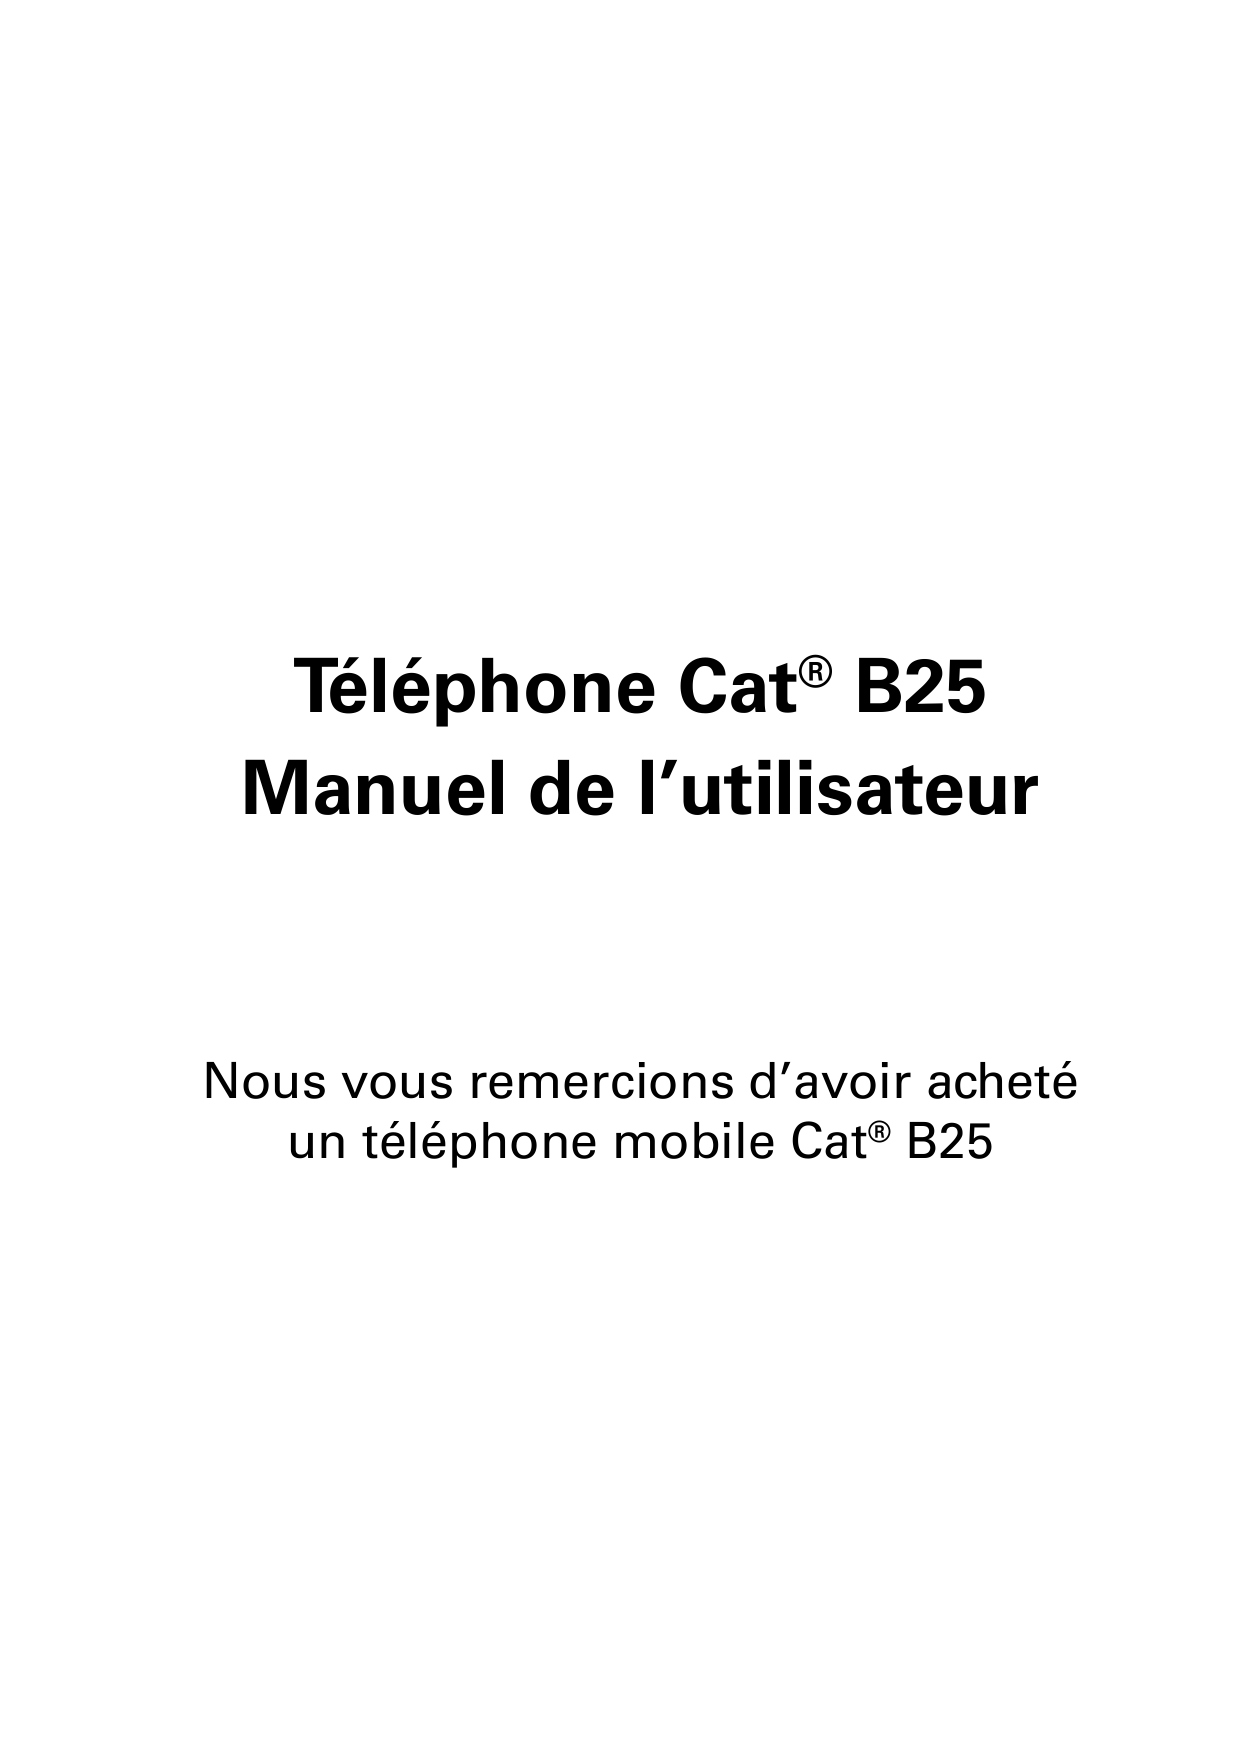 Téléphone Cat® B25Manuel de l’utilisateurNous vous remercions d’avoir achetéun téléphone mobile Cat® B25